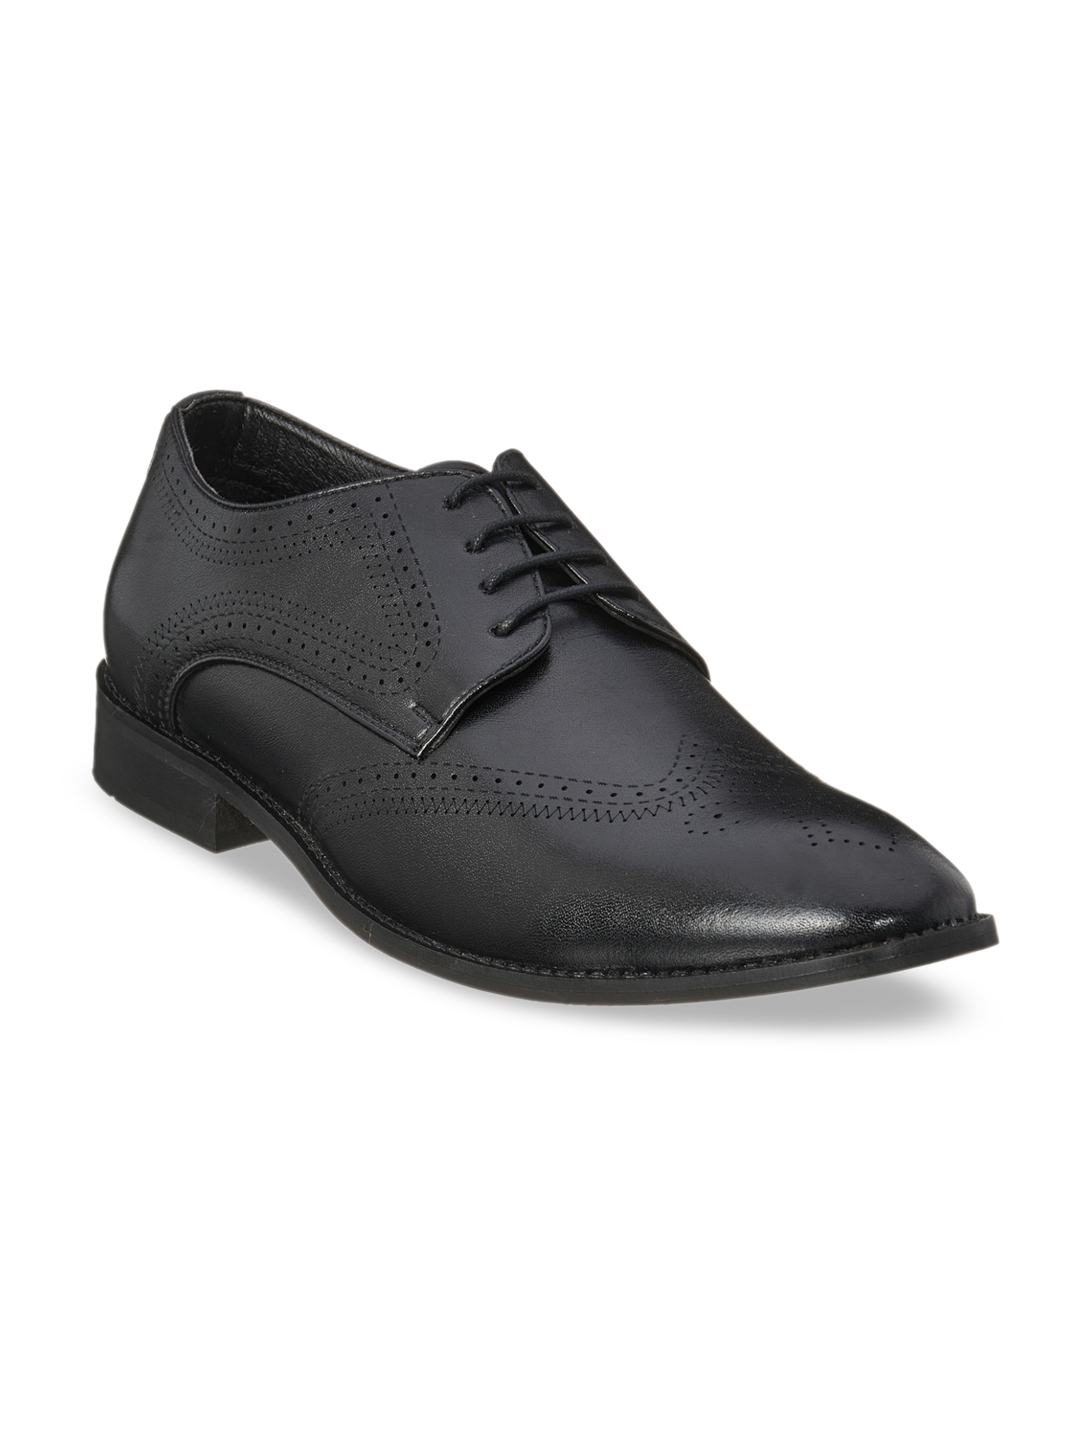 Buy Duke Men Black Solid Formal Derbys - Formal Shoes for Men 14372964 ...